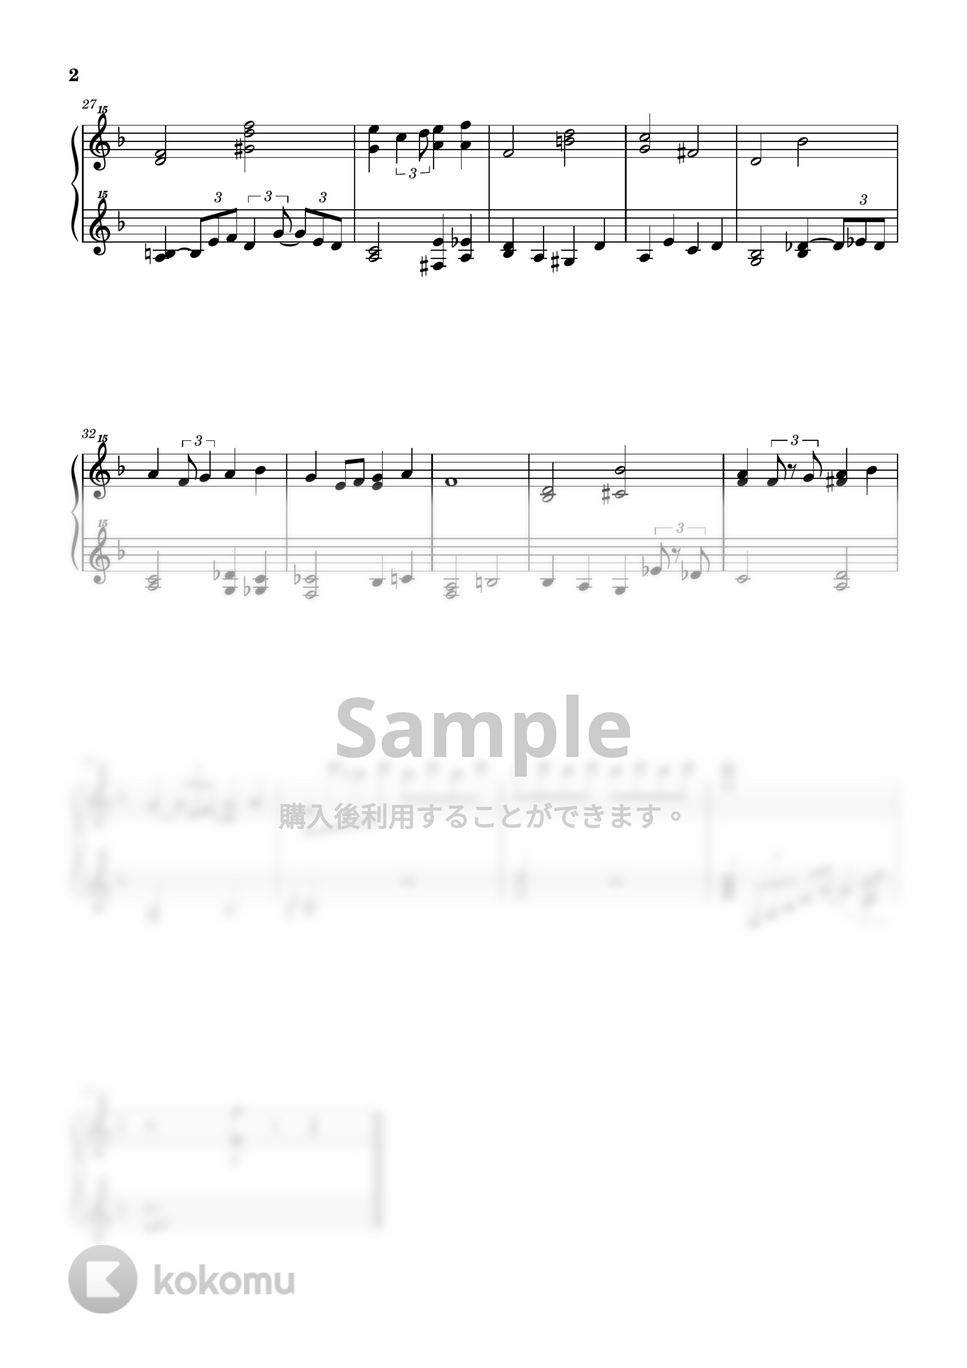 ARLEN HAROLD - Over the Rainbow (ピアノ / ジャズ / 32鍵盤) by 川西三裕